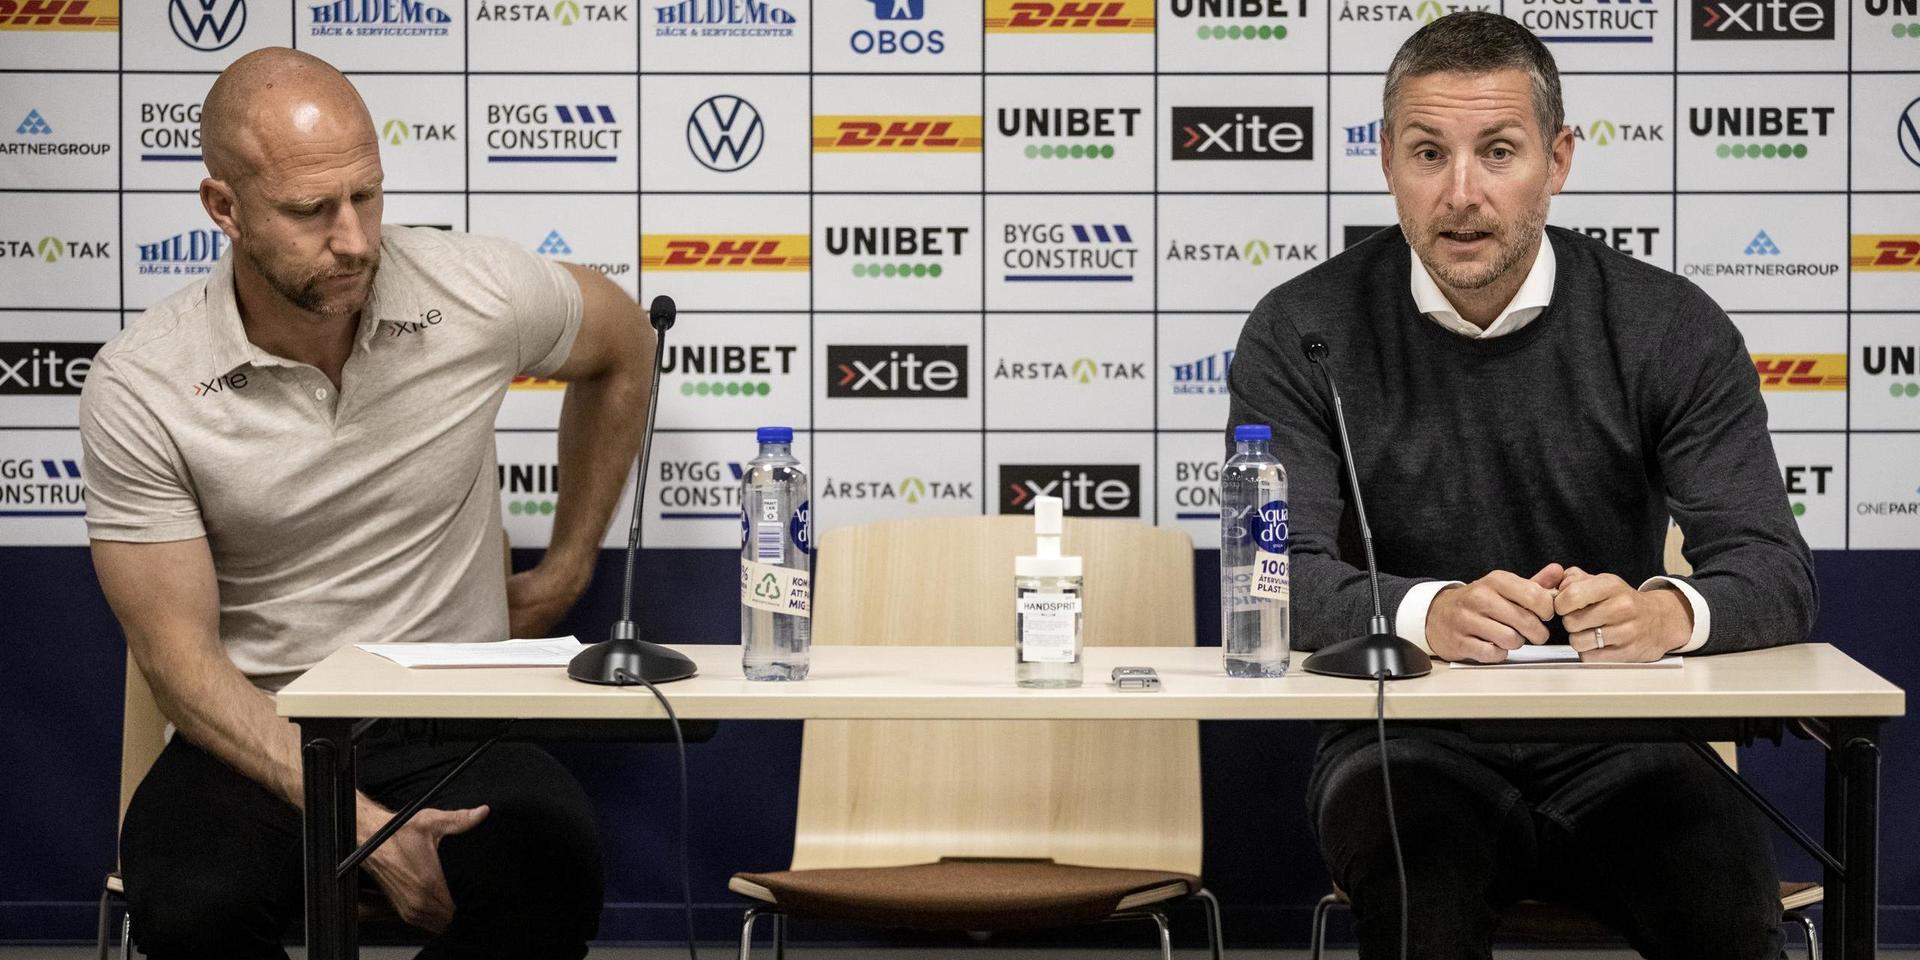 Sirius tränare Henrik Rydström och Örebros tränare Axel Kjäll under presskonferensen efter matchen.